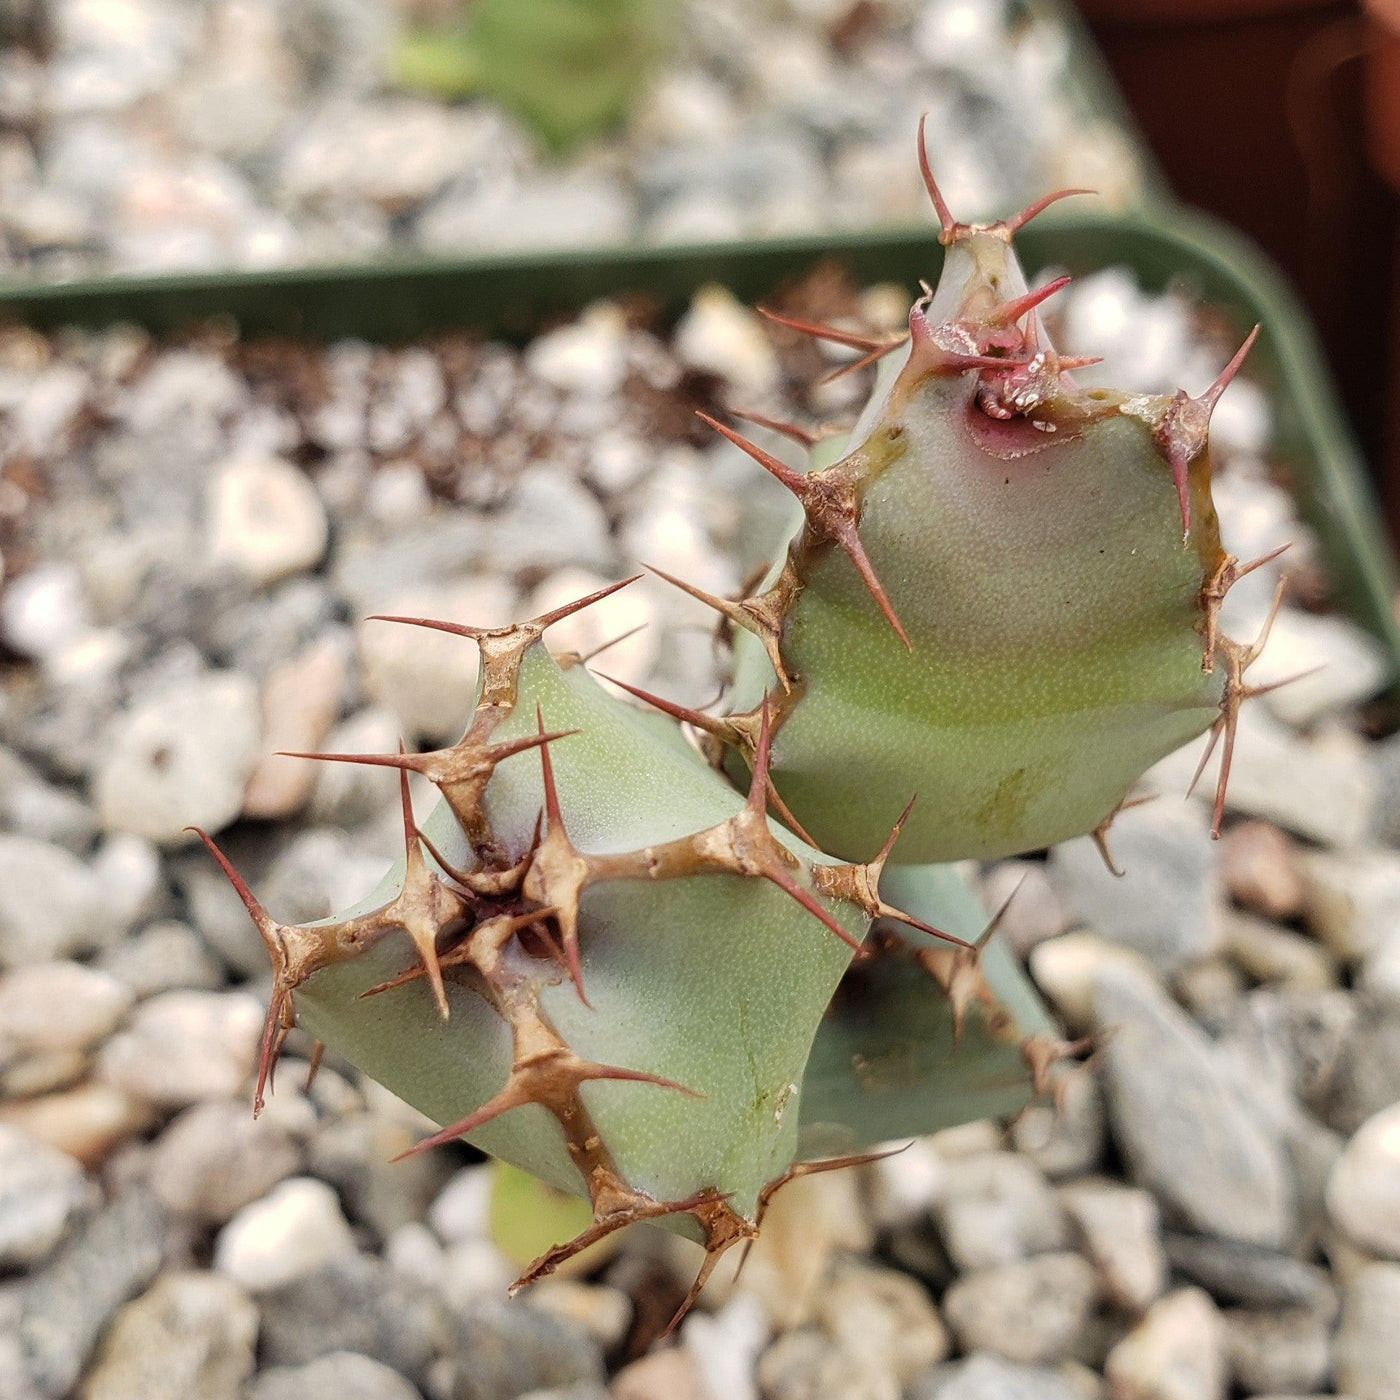 Euphorbia cooperi